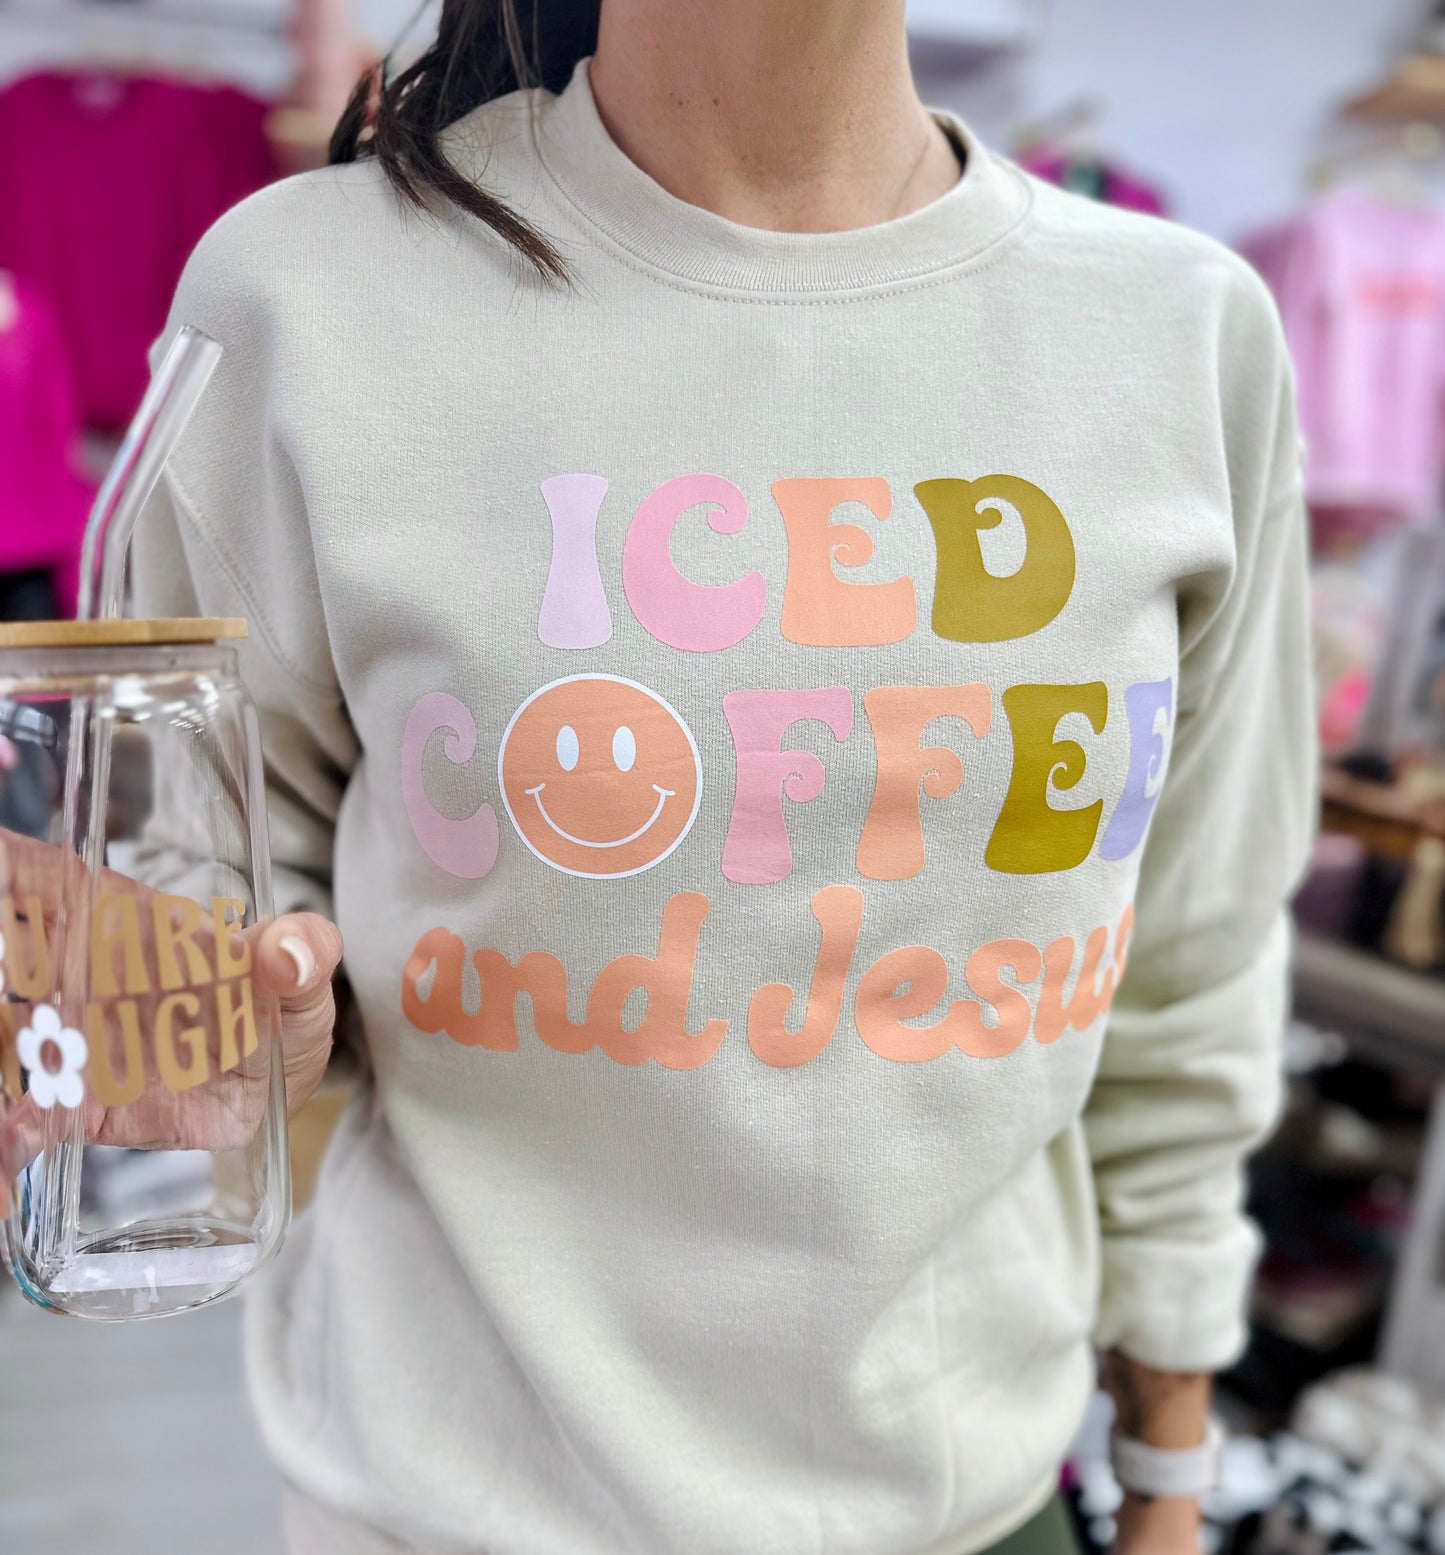 Iced Coffee and Jesus Sweatshirt